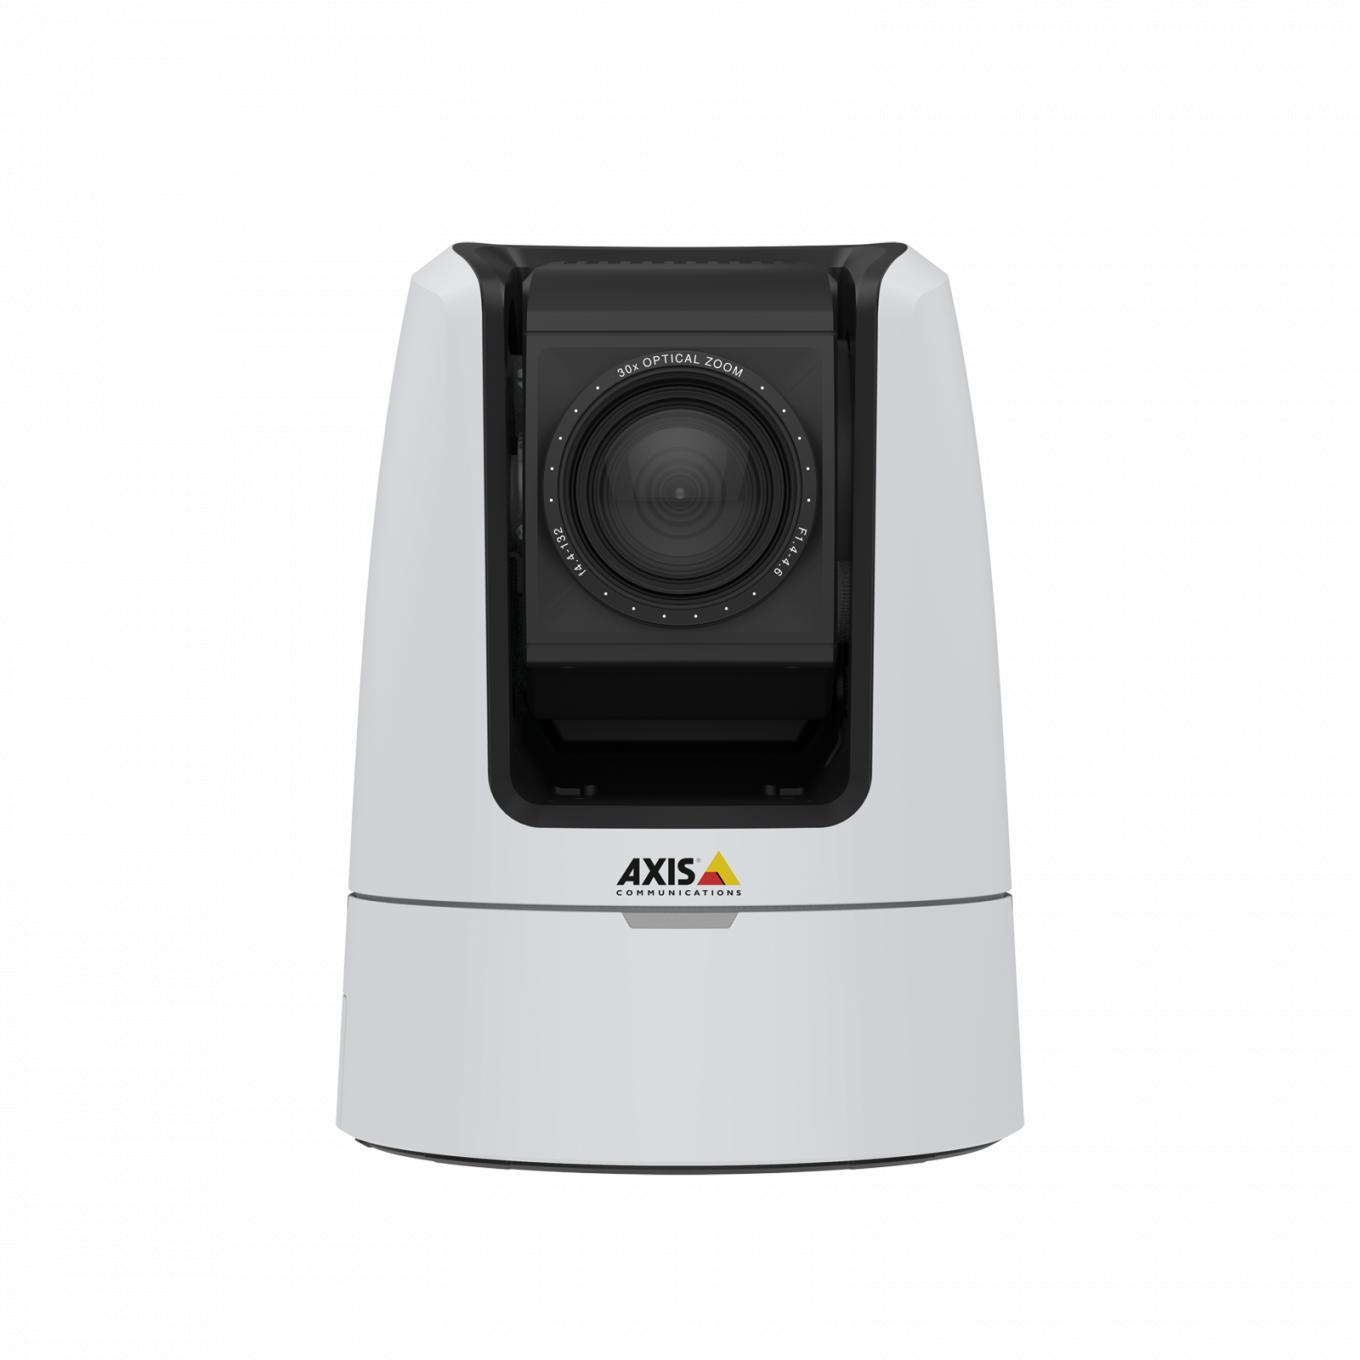 AXIS V5925 PTZ Network Camera oferuje dźwięk klasy studyjnej dzięki wejściom XLR